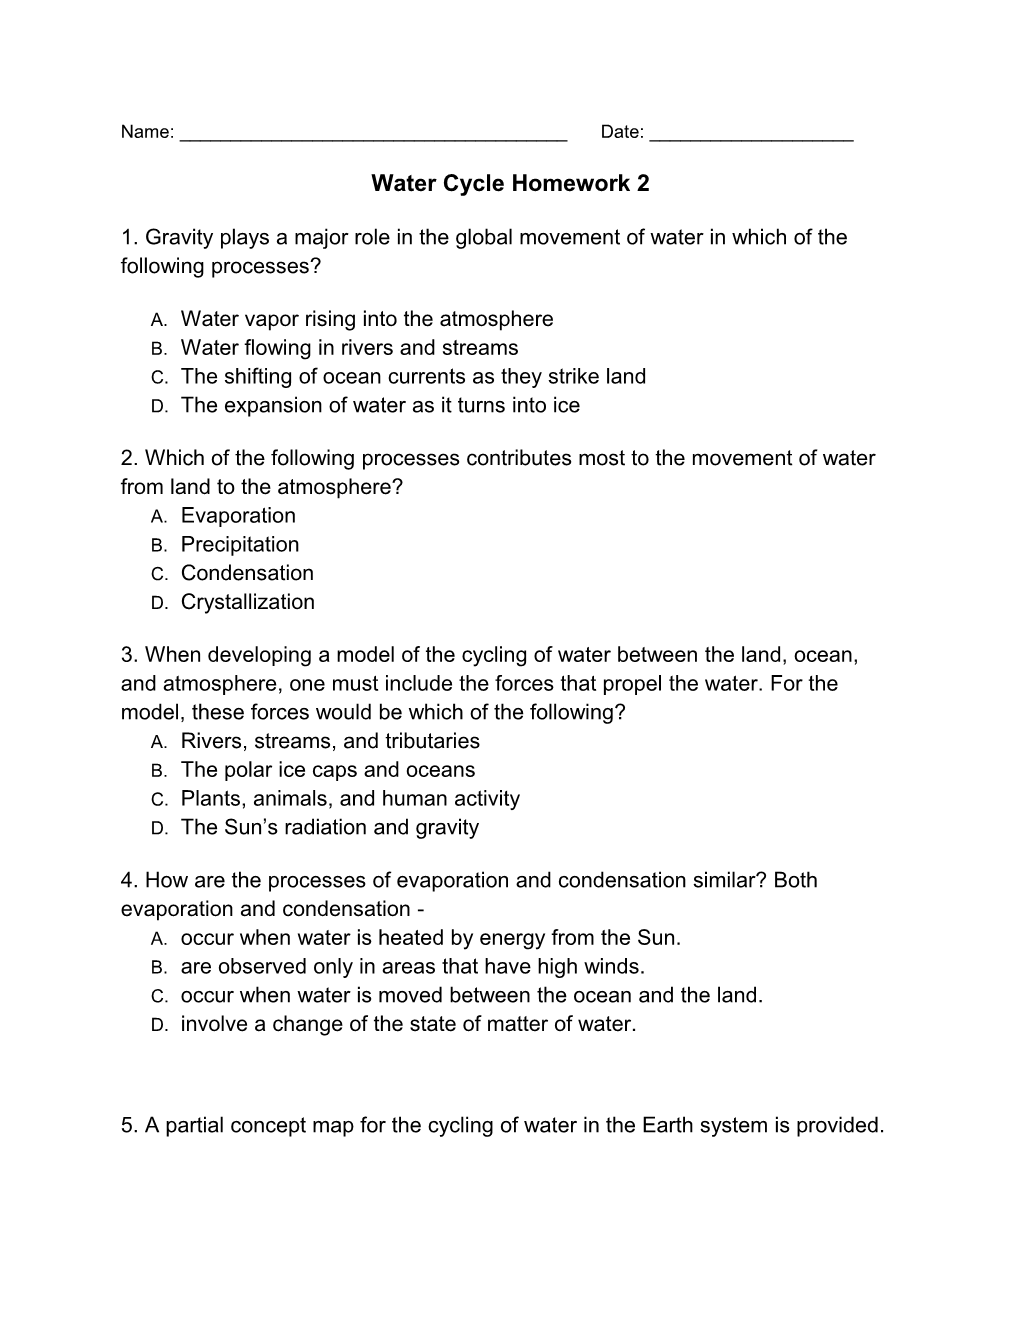 Water Cycle Homework 2